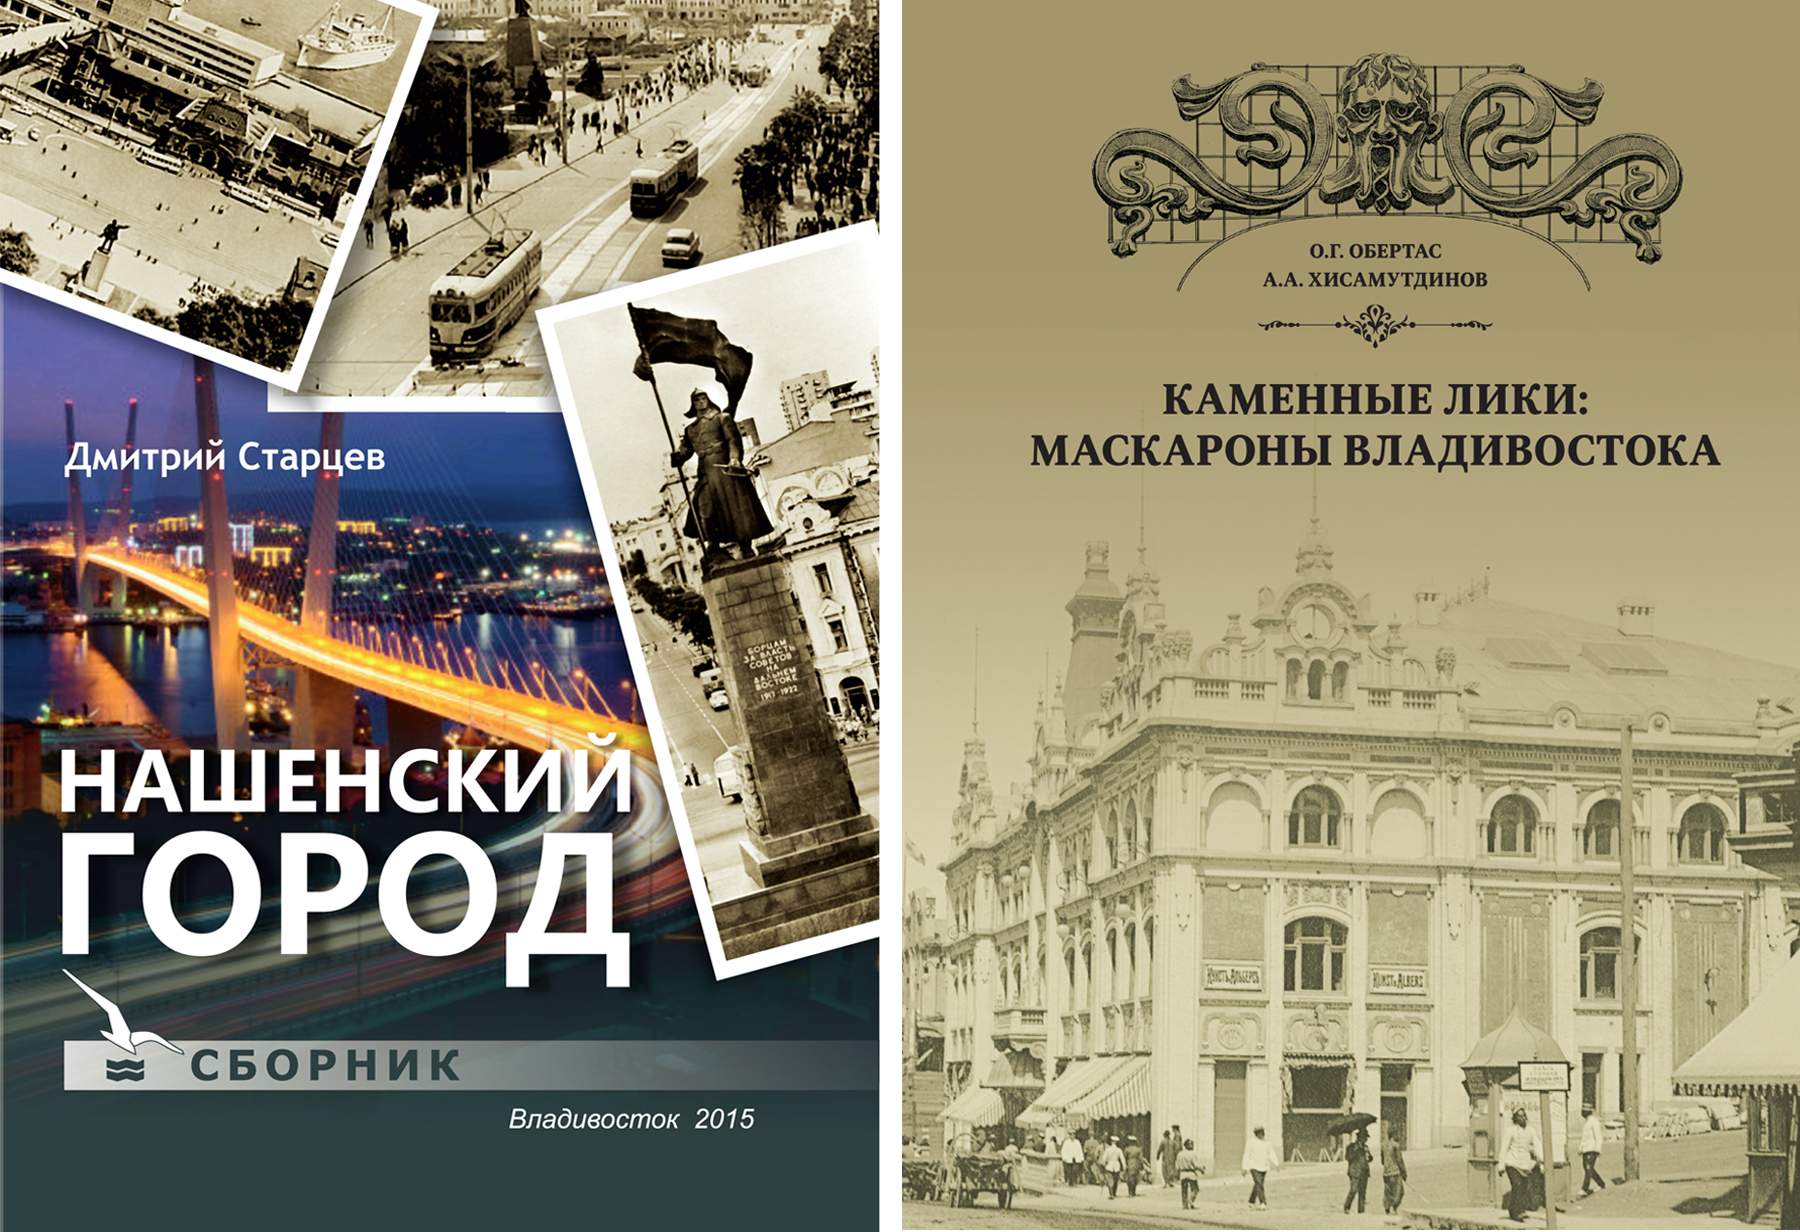 155-летие города ВГУЭС отметил изданием книг о Владивостоке